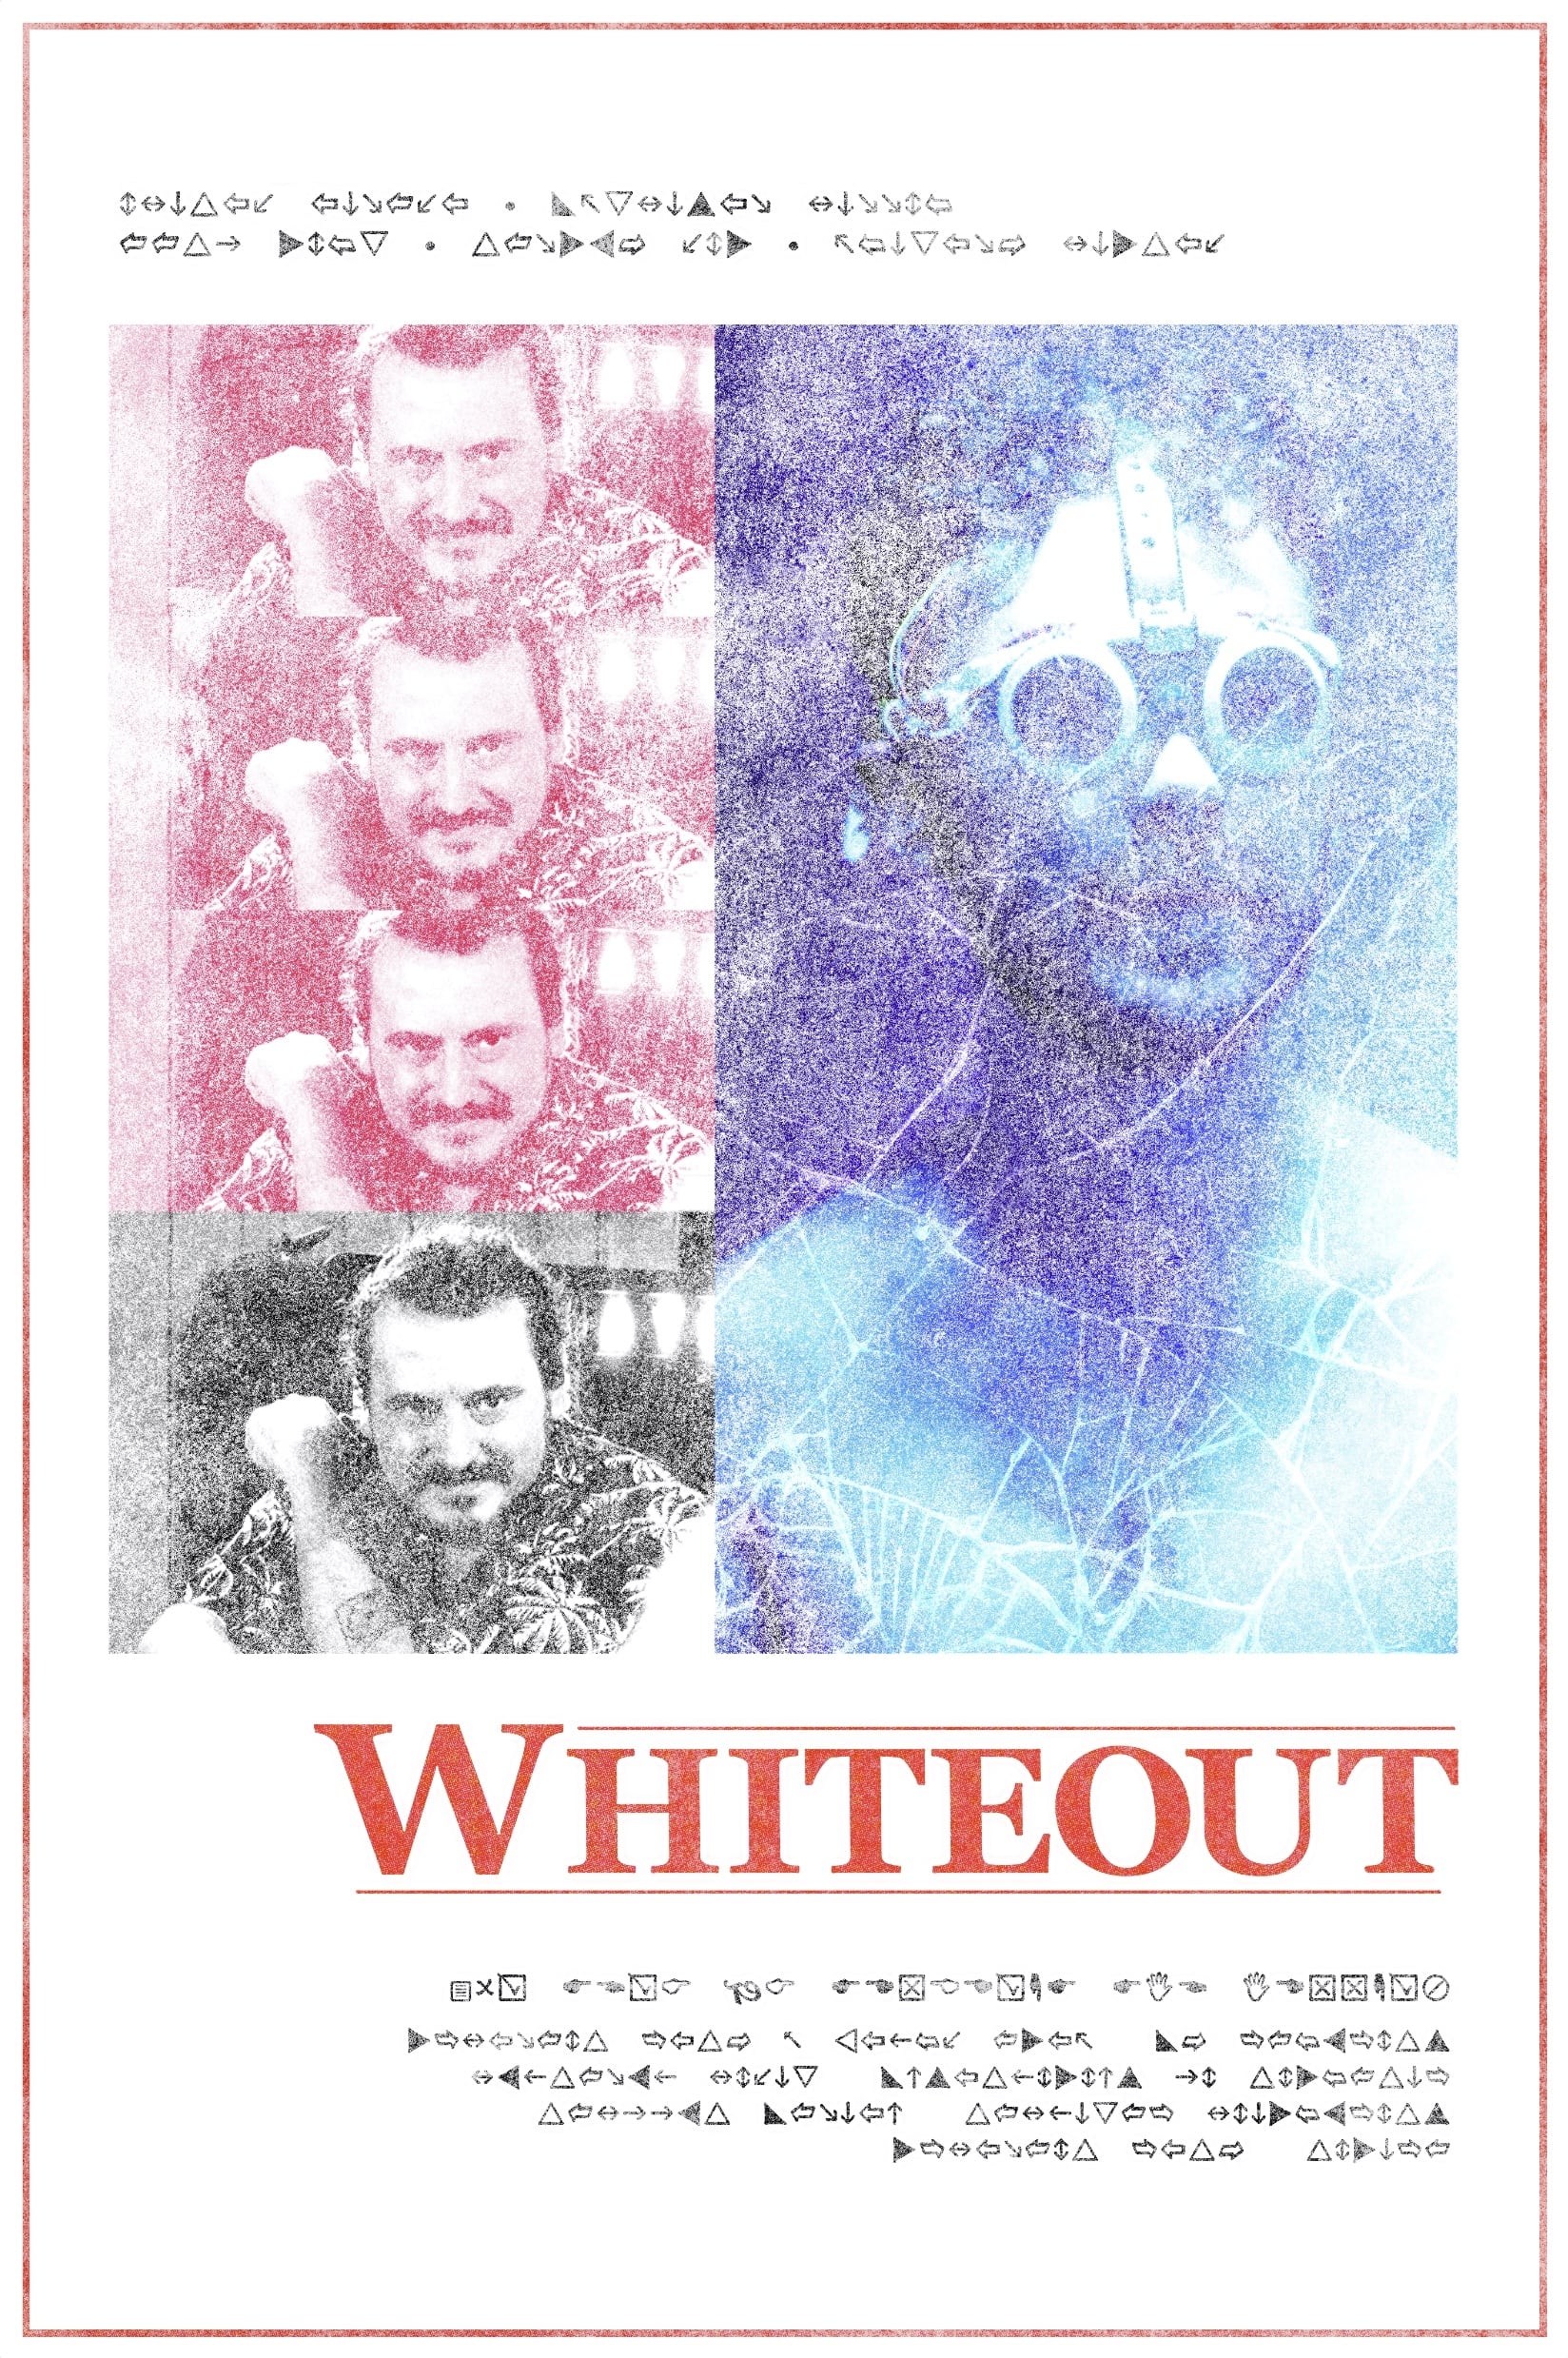 WHITEOUT